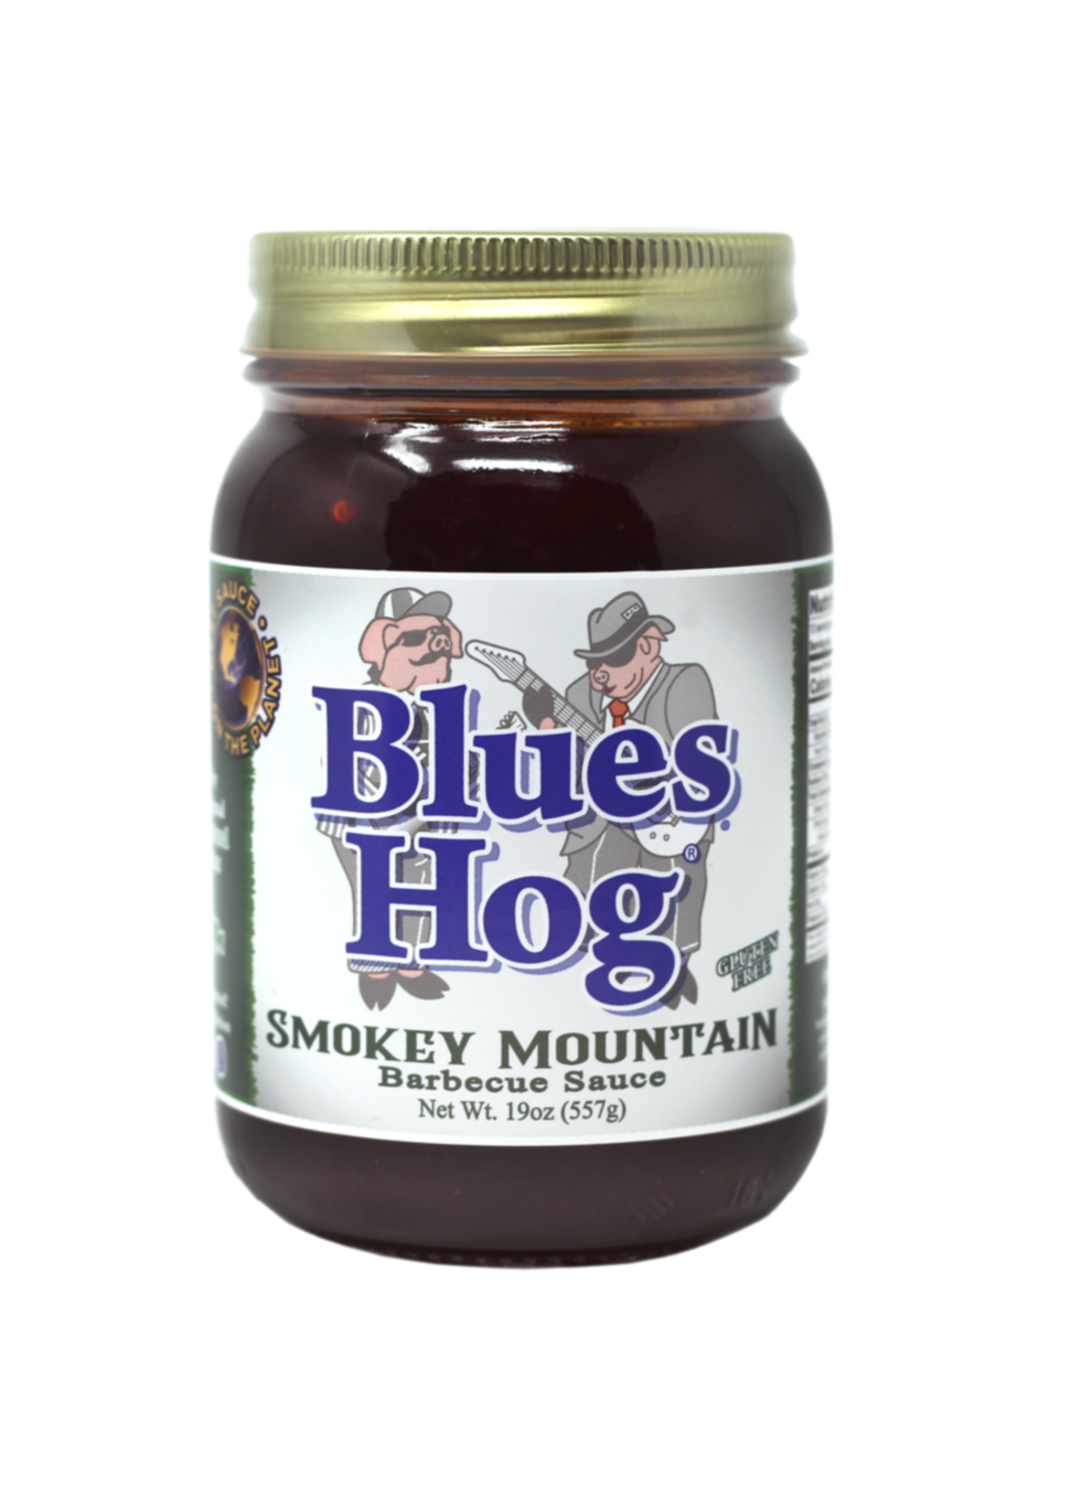 Blues hog Smokey Mountain